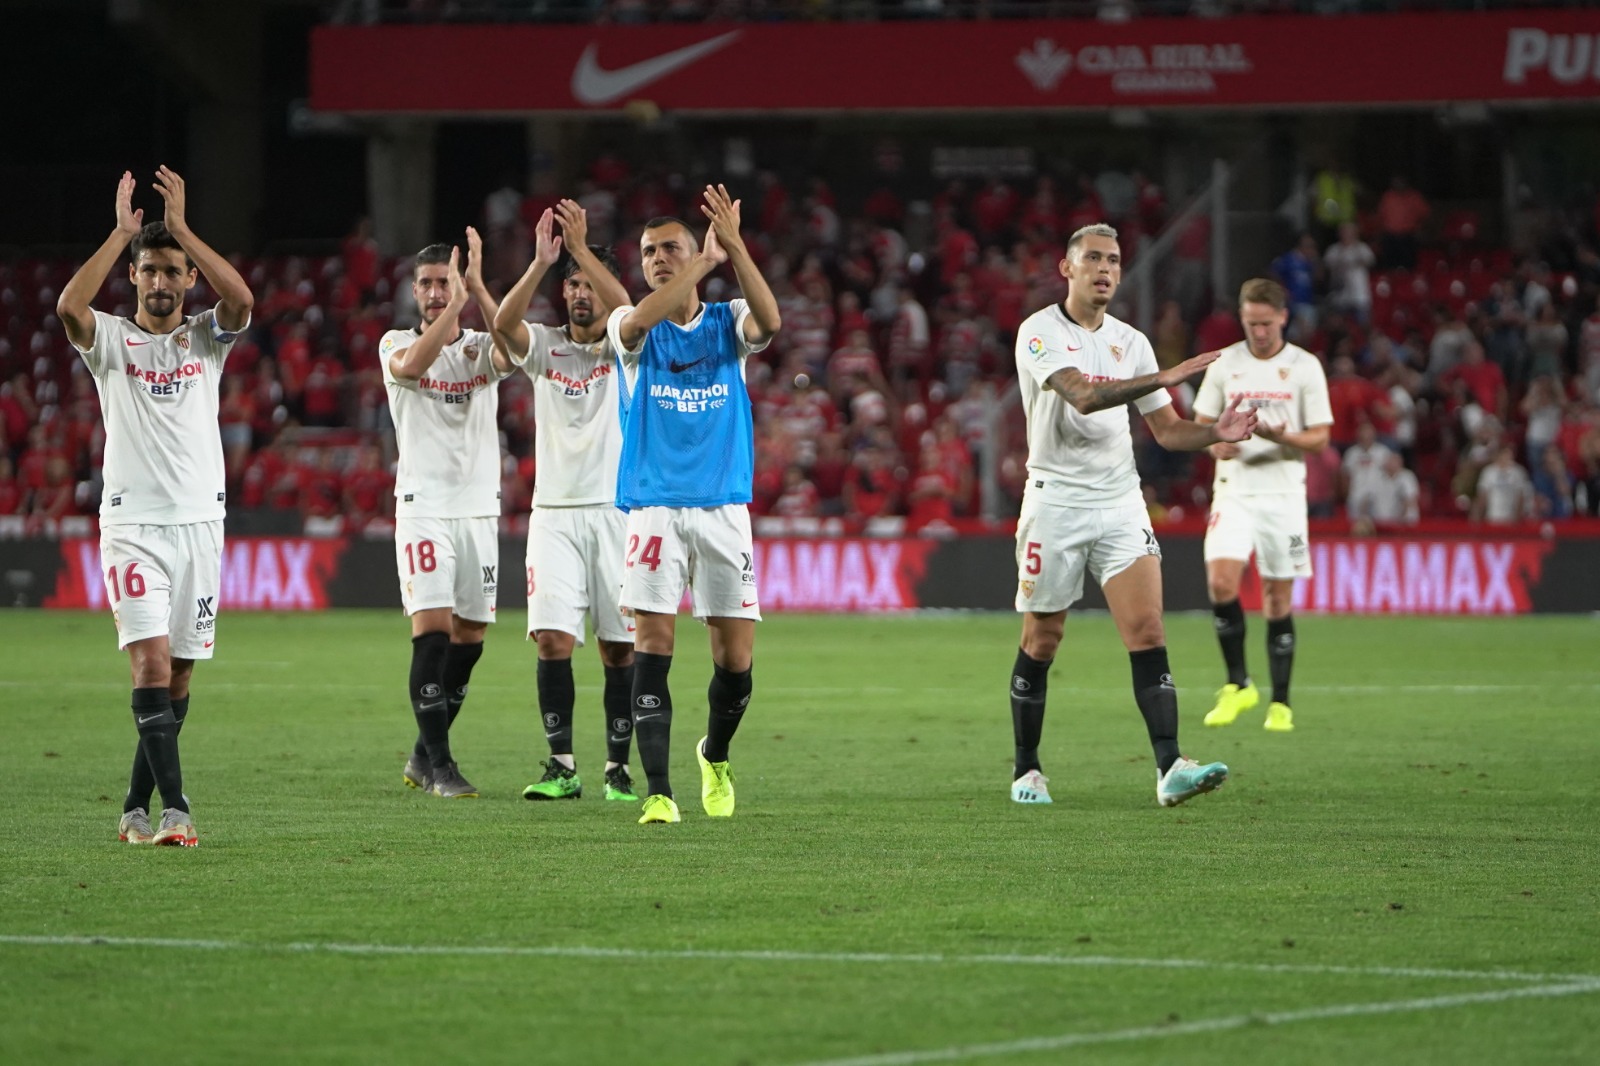 Sevilla FC squad celebrating the win in Granada